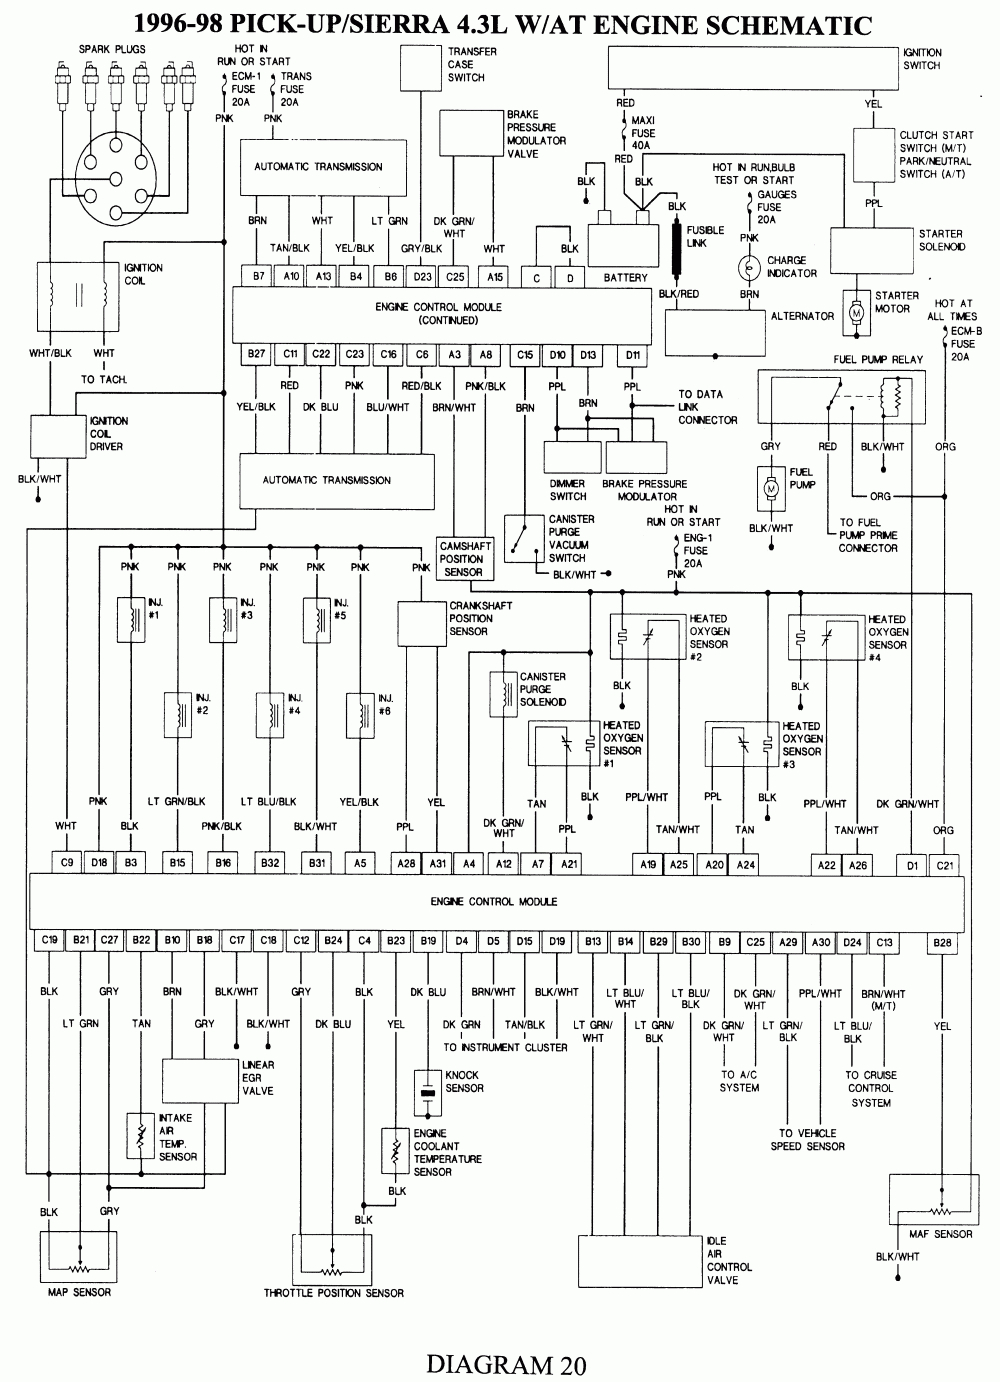 Repair Guides | Wiring Diagrams | Wiring Diagrams | Autozone - 1993 Chevy Silverado Wiring Diagram